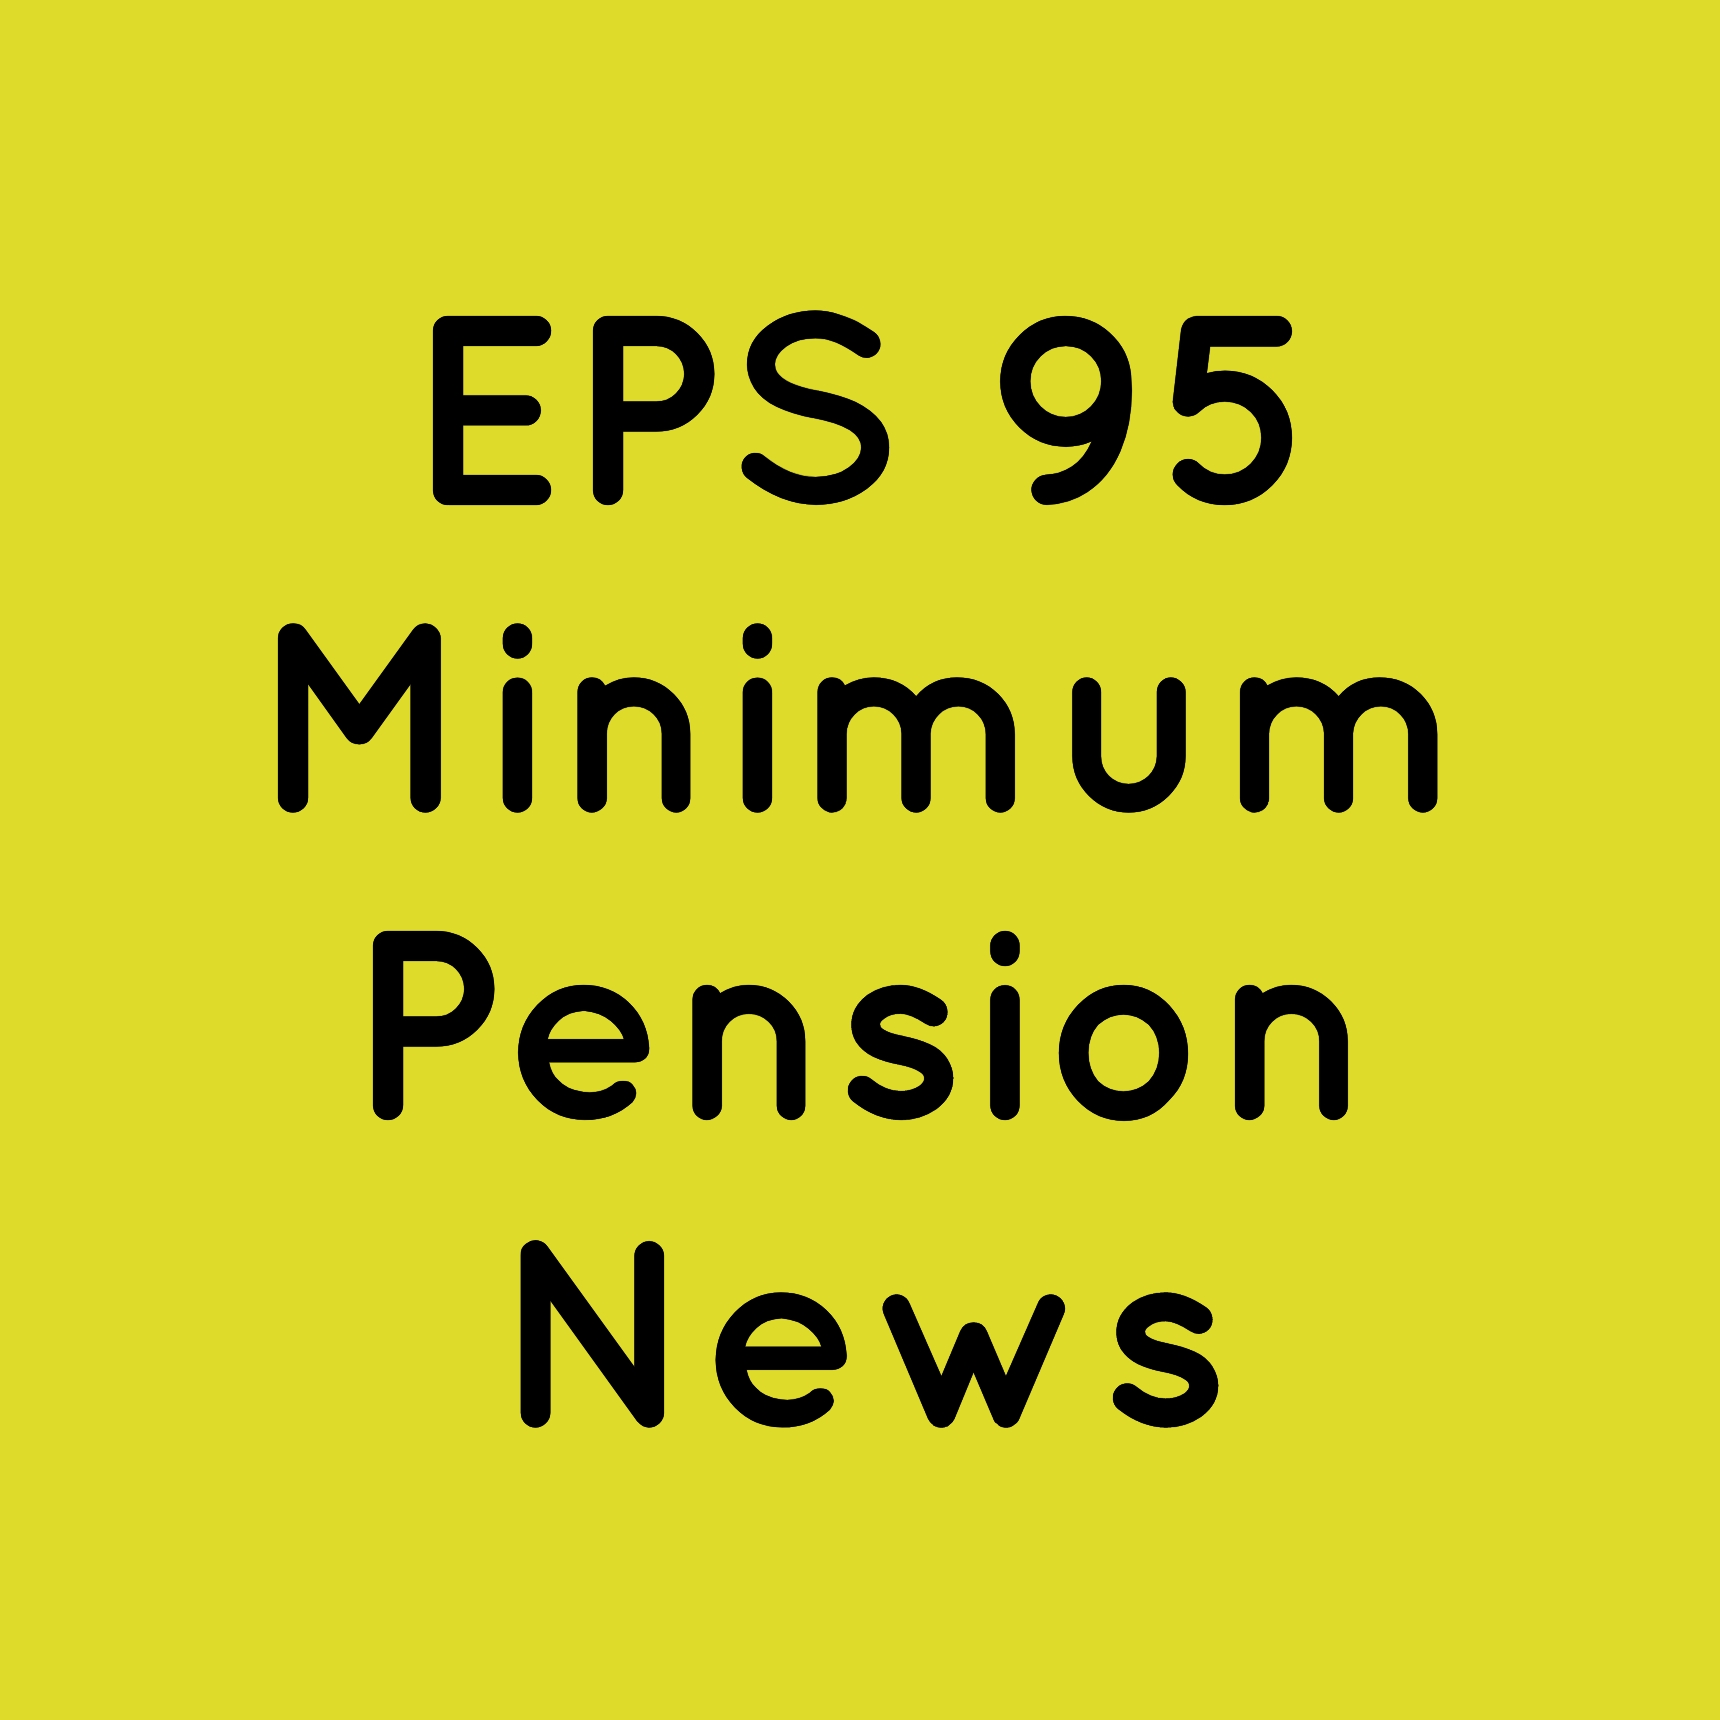 EPS 95 Minimum Pension News